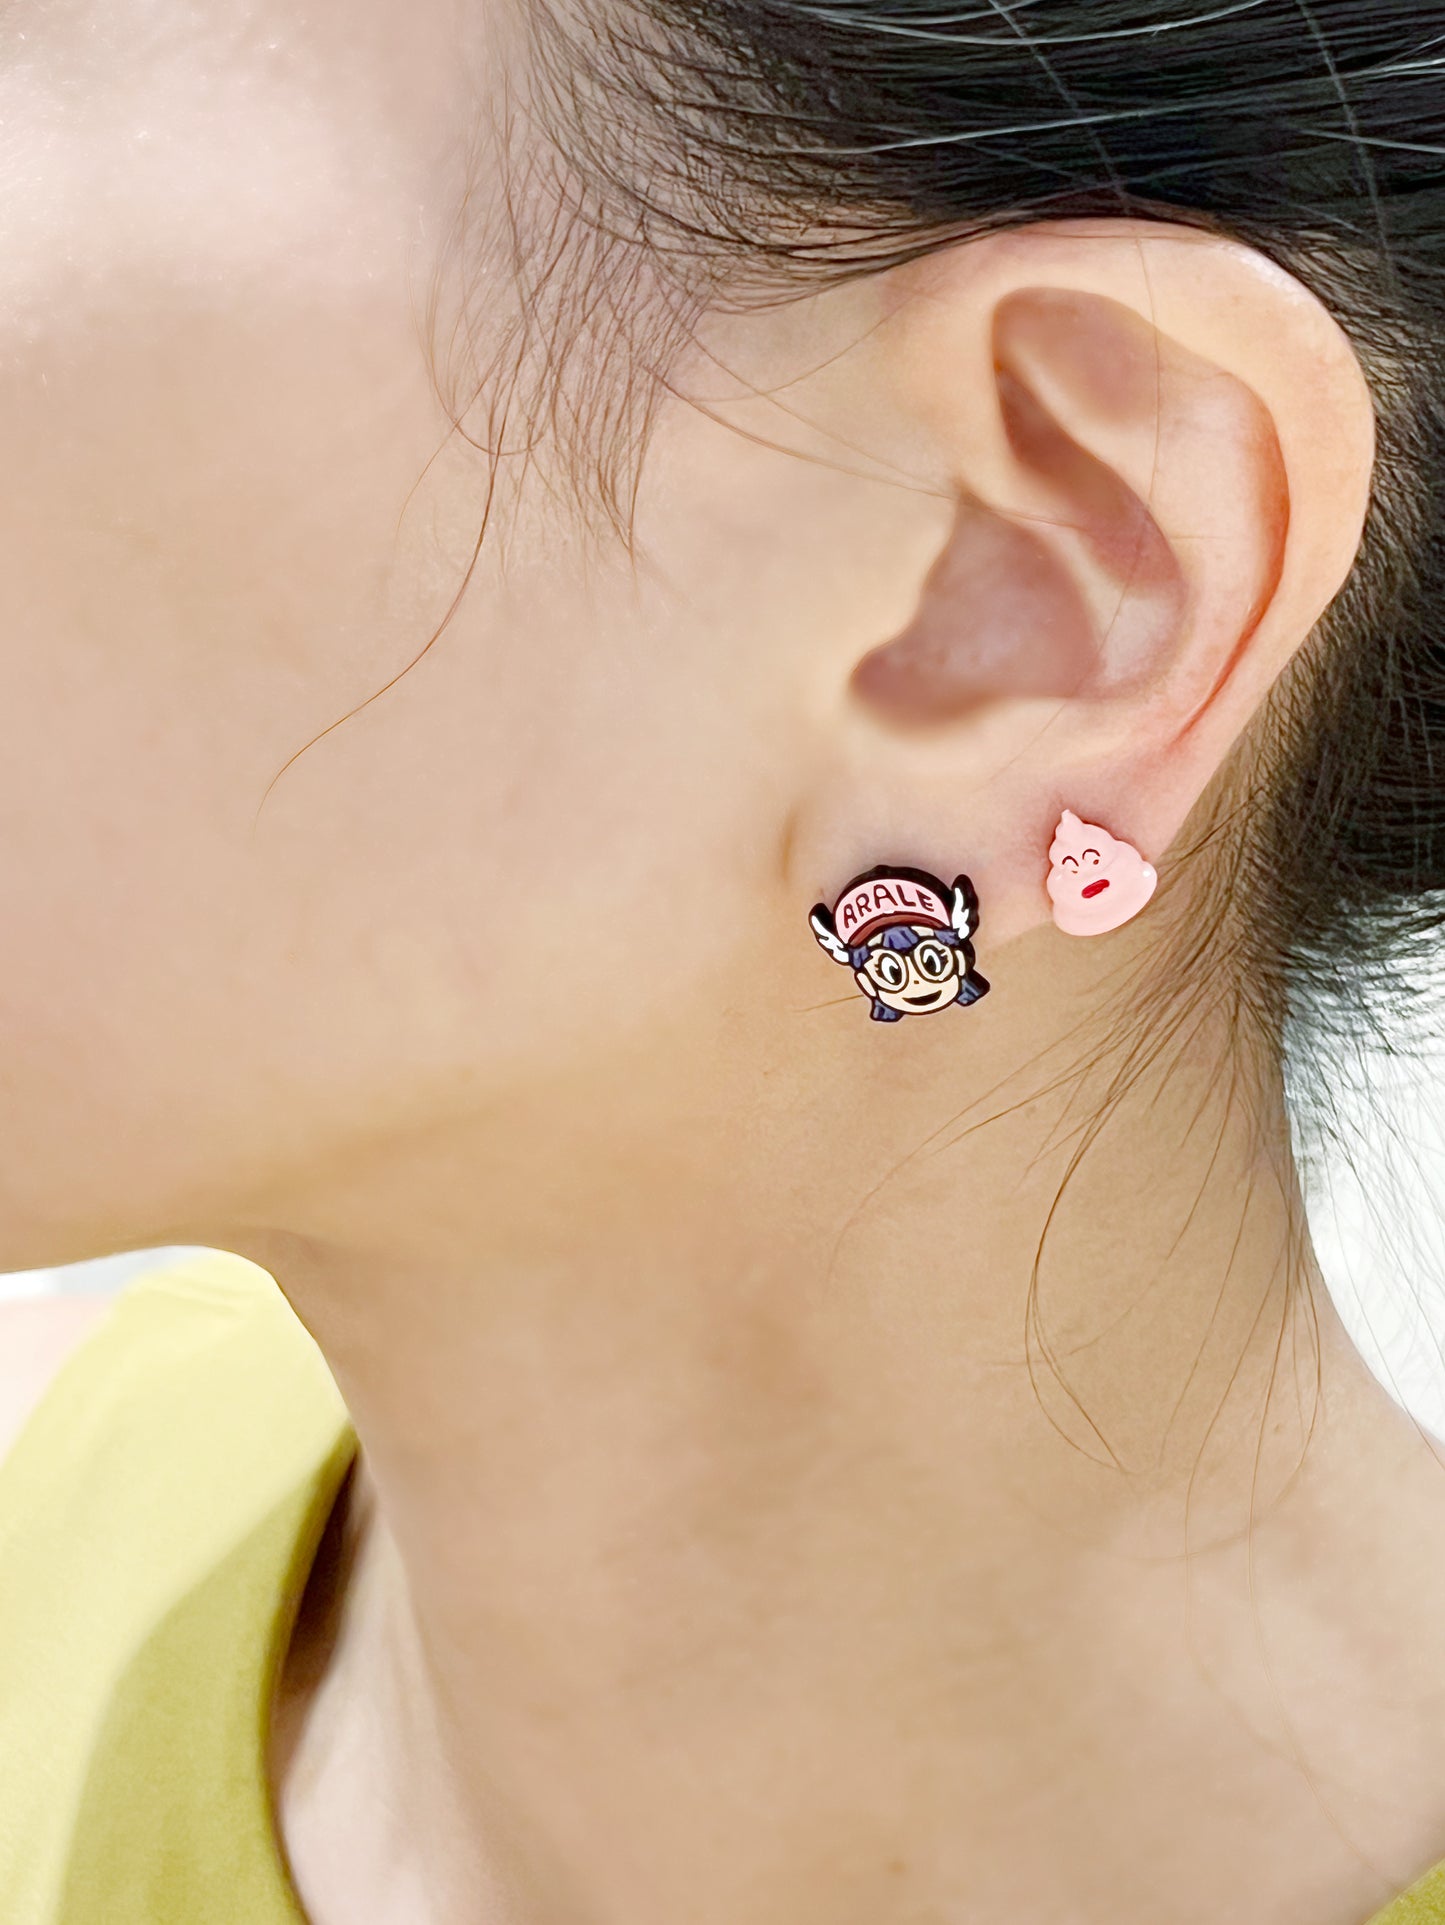 Arale Slump Dr. unbalance earrings Kawaii Japanese Anime characters earrings